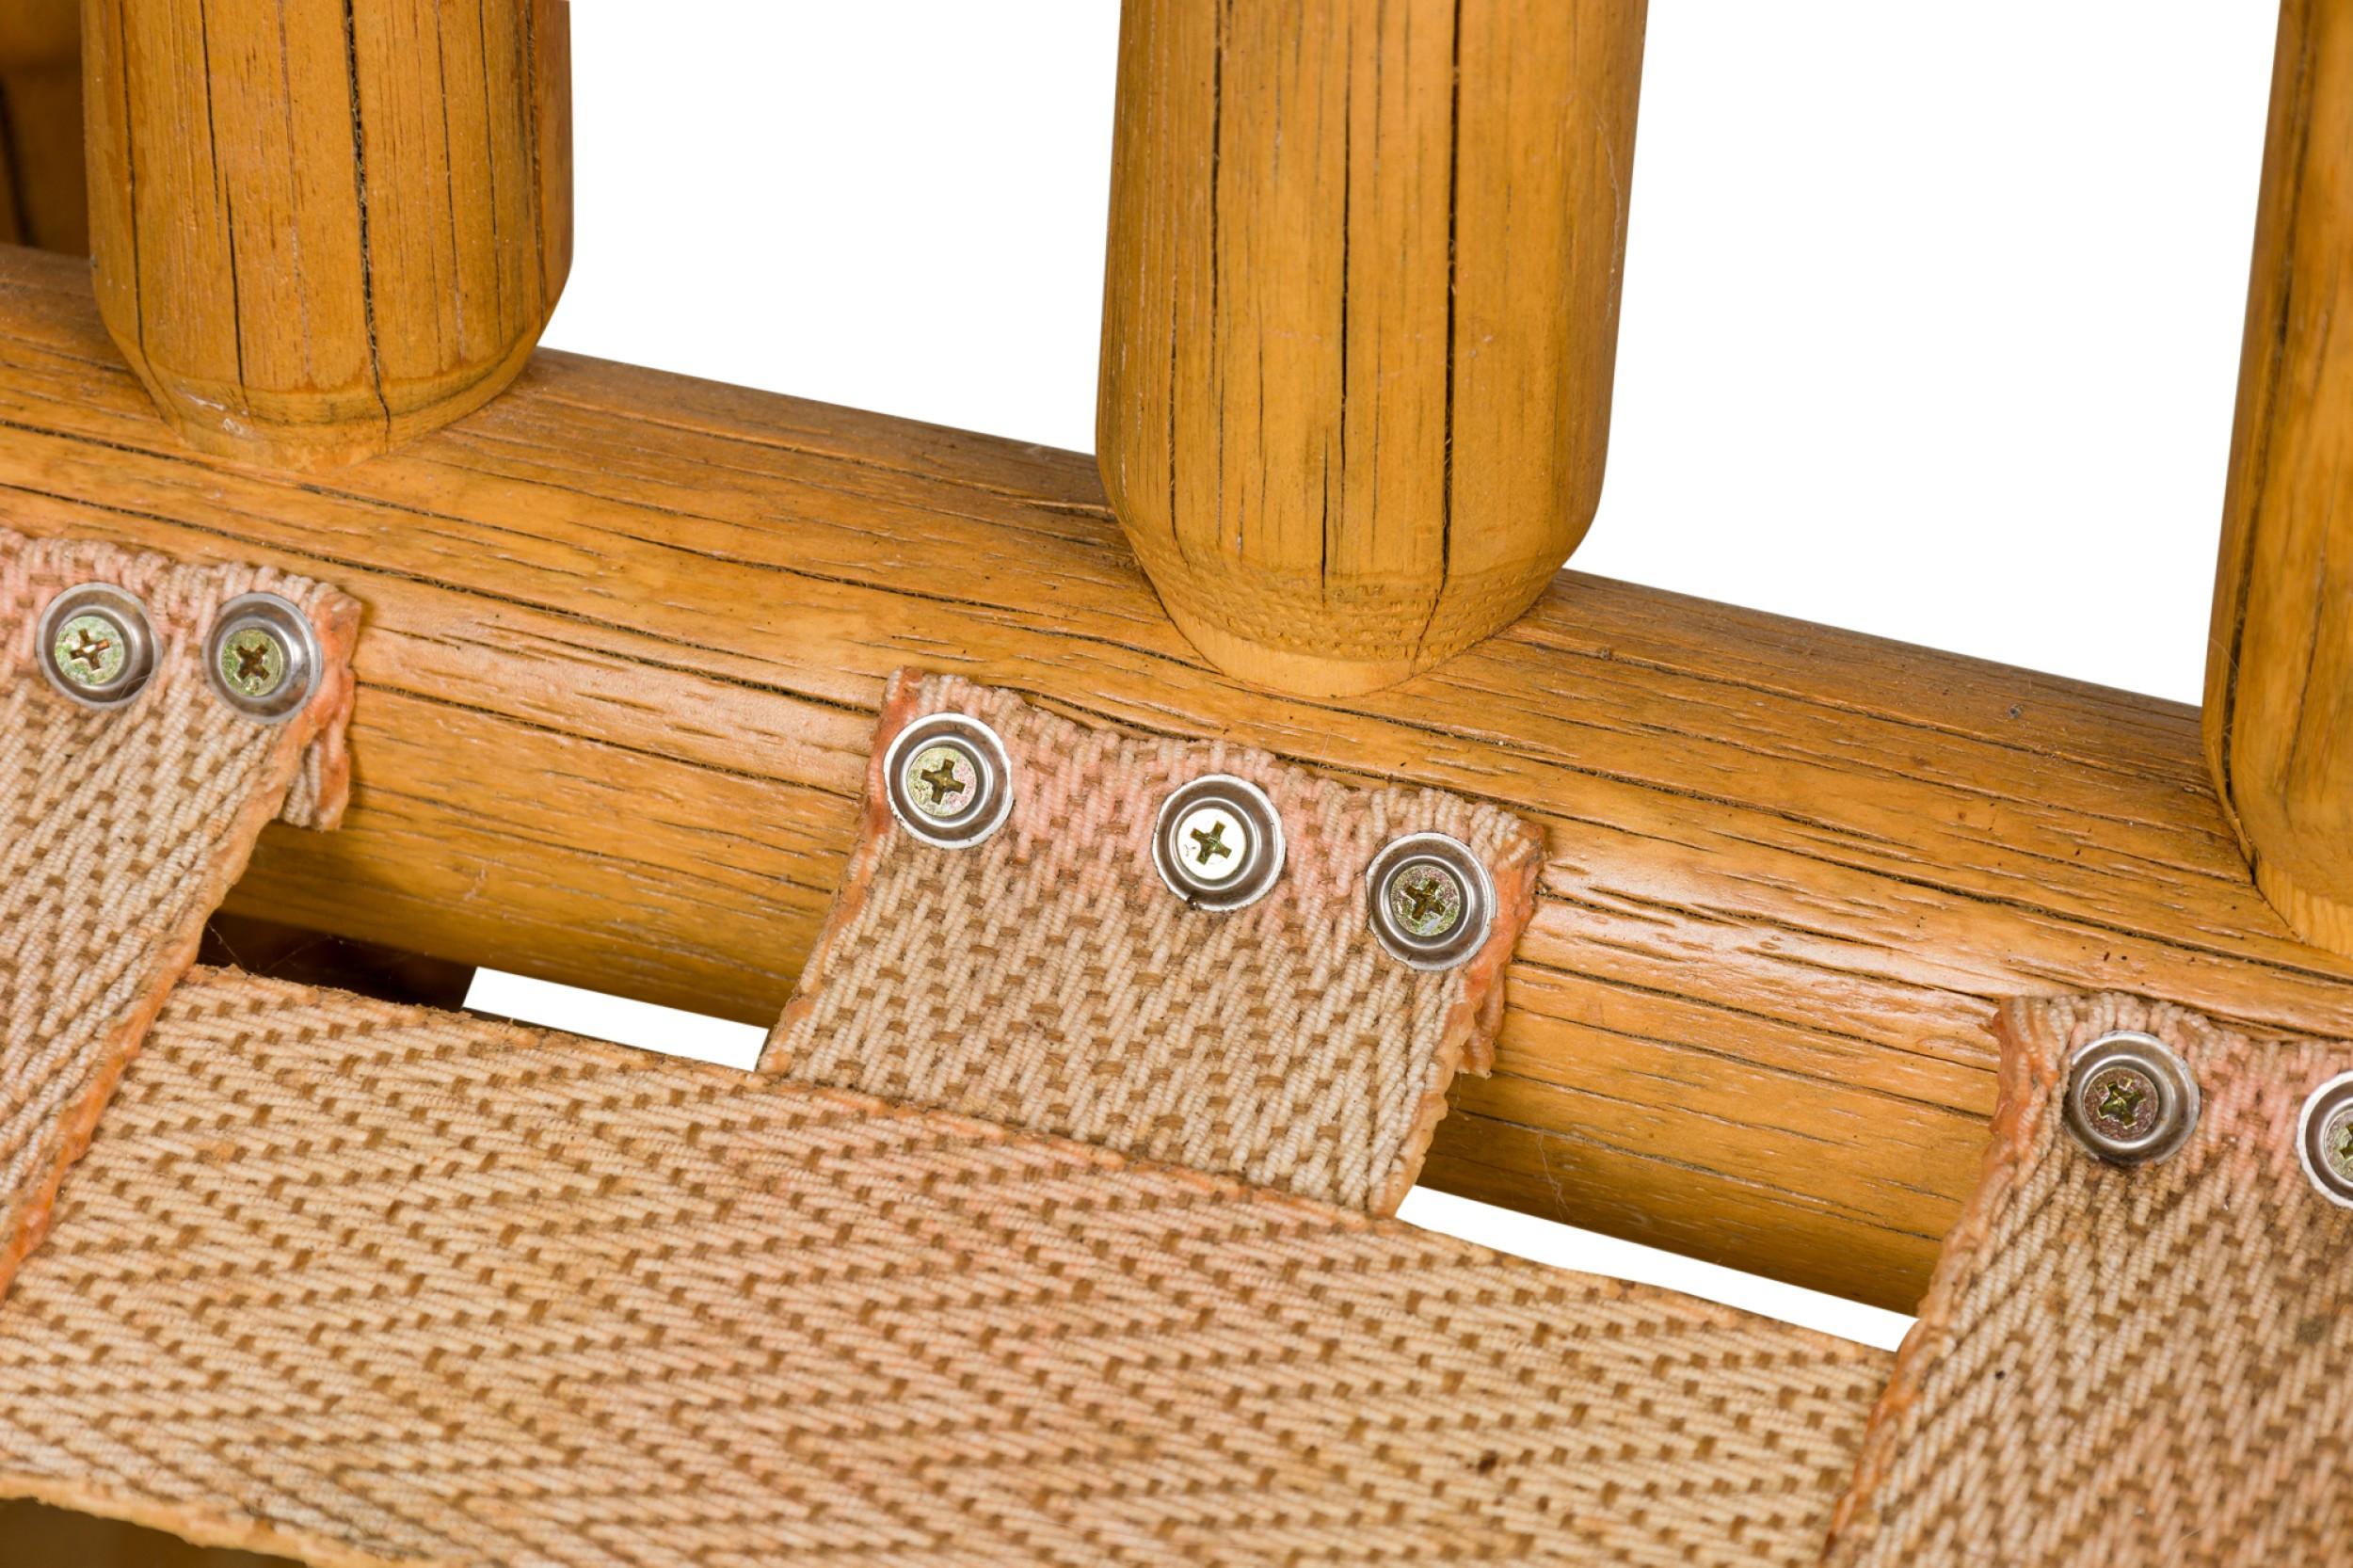 Fauteuil rustique de style Adirondack surdimensionné avec une structure en bois de racines blondes, un dossier en angle avec des lattes verticales en bois rond et un coussin d'assise et de dossier amovible en cuir brun caramel gaufré et fleuri.
